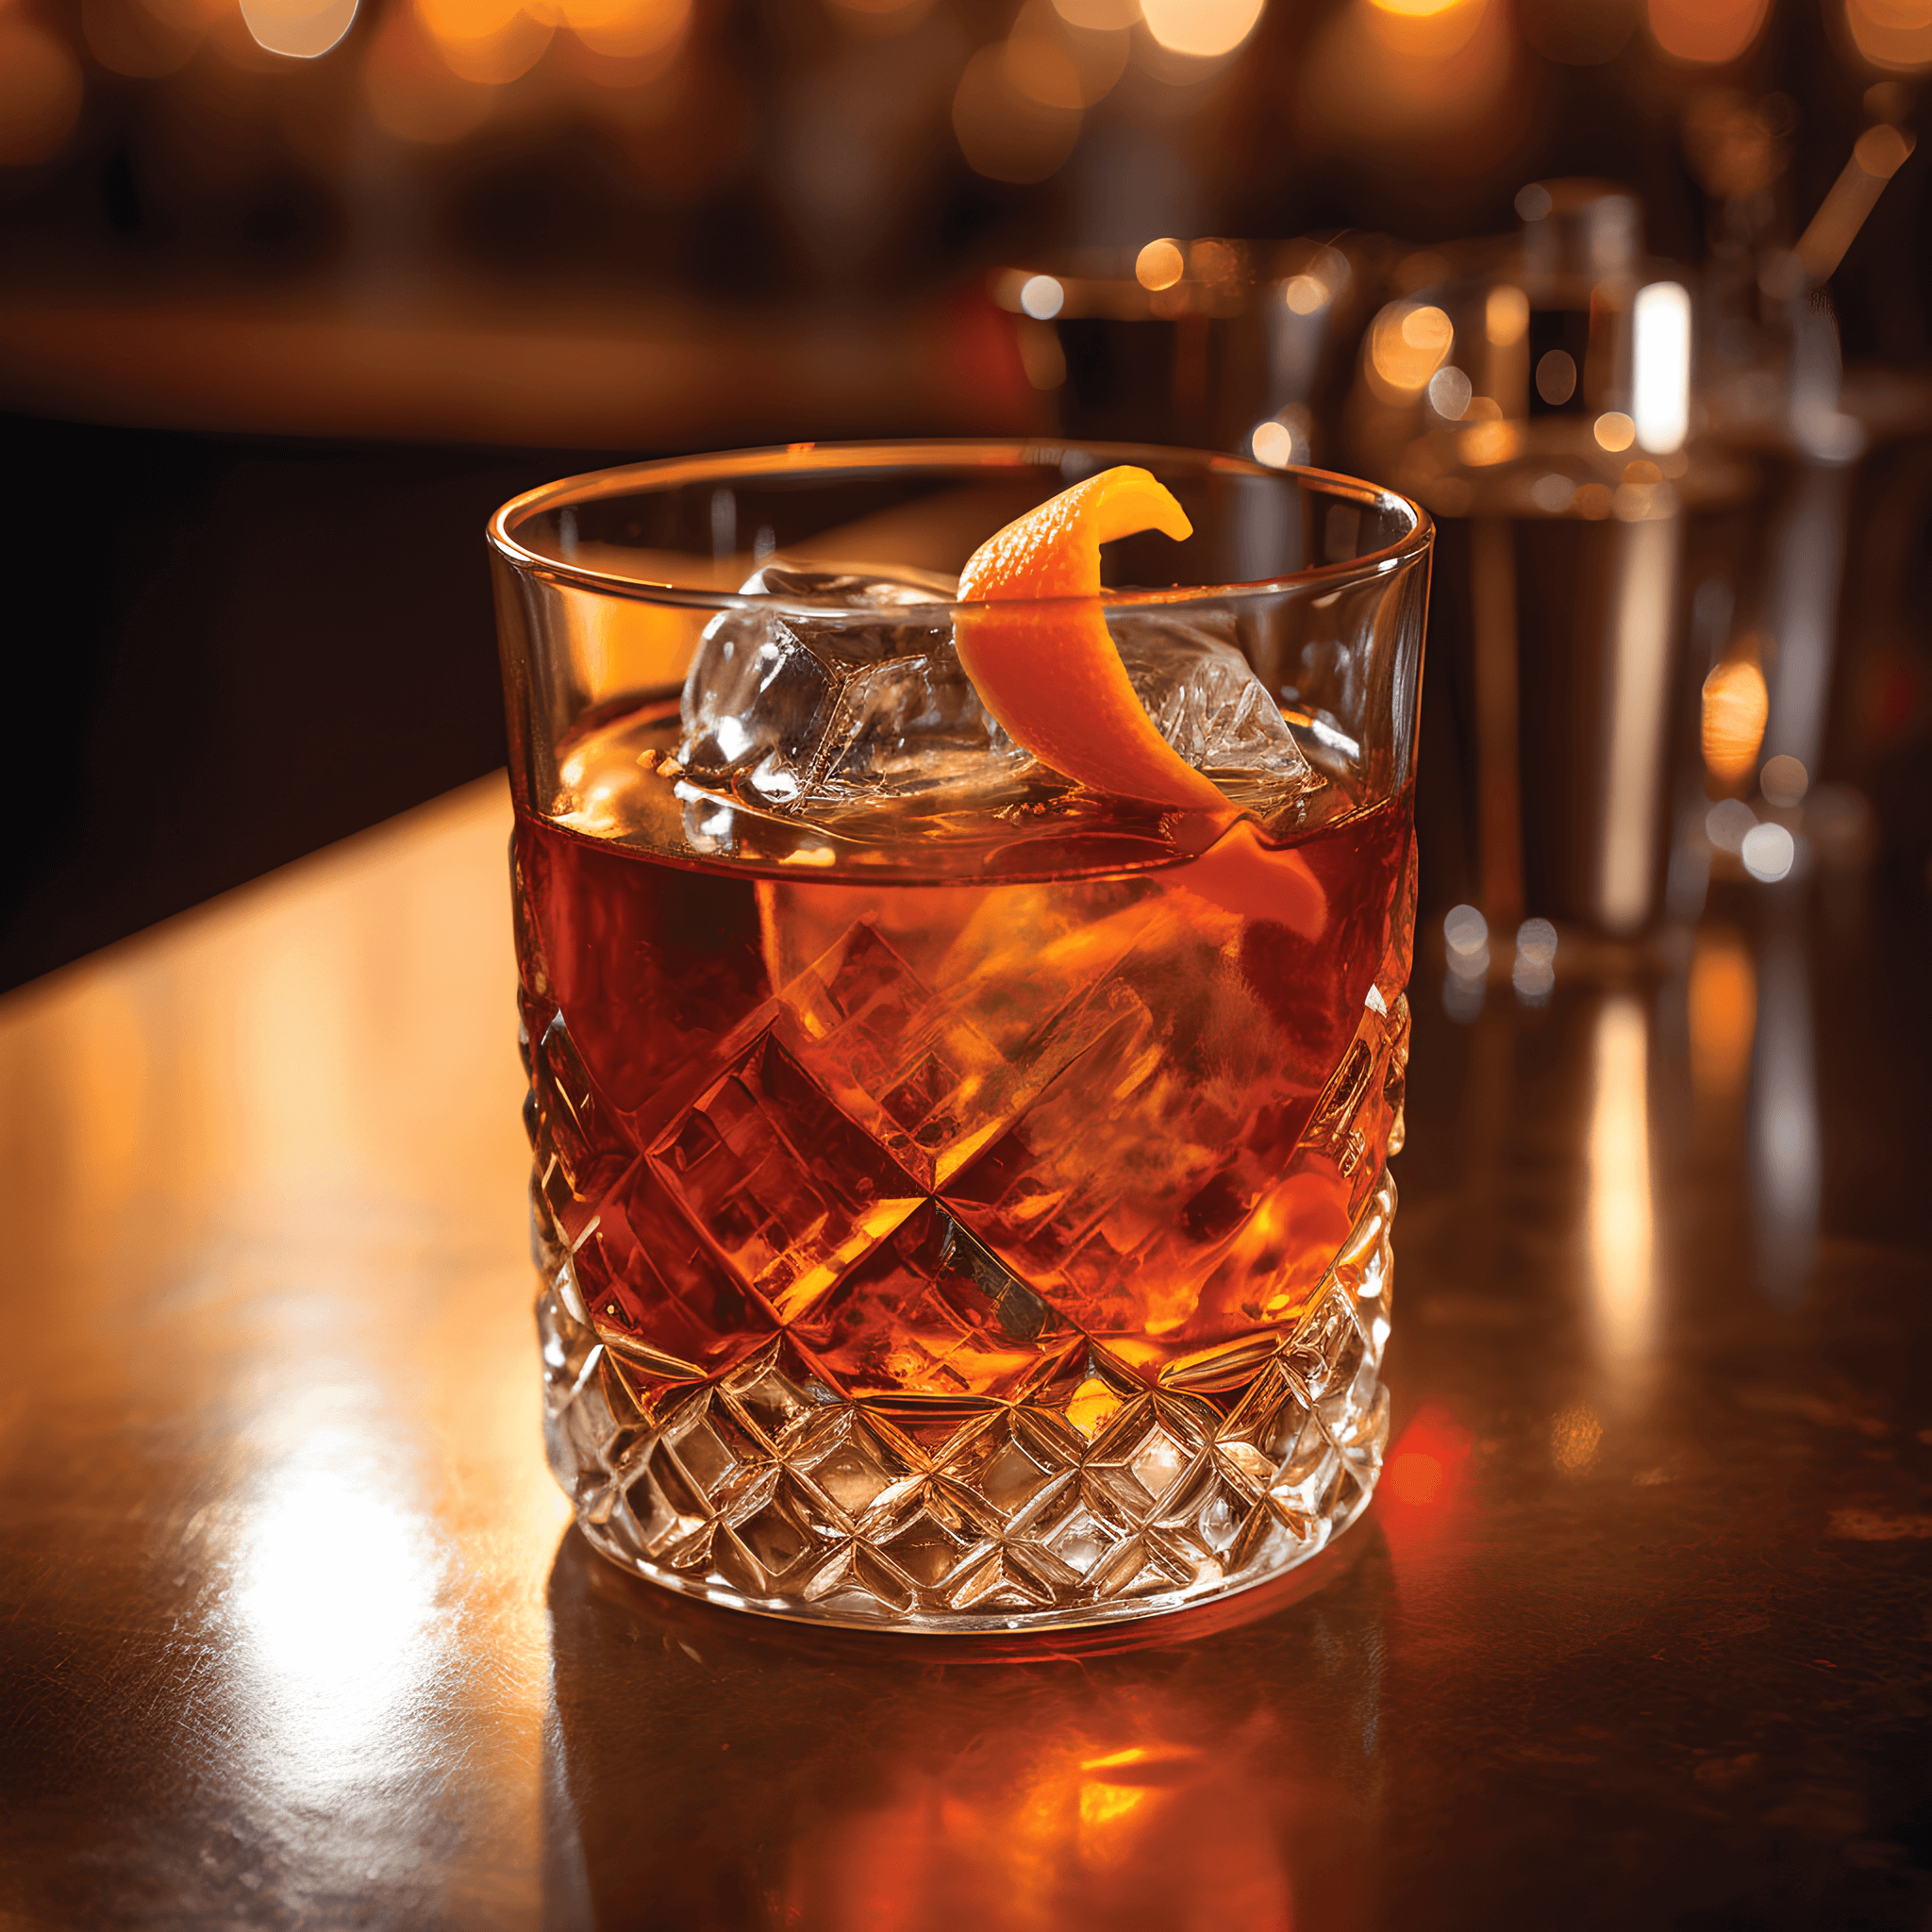 El Old Fashioned tiene un sabor rico y complejo que es dulce y amargo. El whisky proporciona una base fuerte y cálida, mientras que el azúcar y los amargos agregan un toque de dulzura y un toque de especias. La guarnición de naranja y cereza agrega una nota sutilmente afrutada.